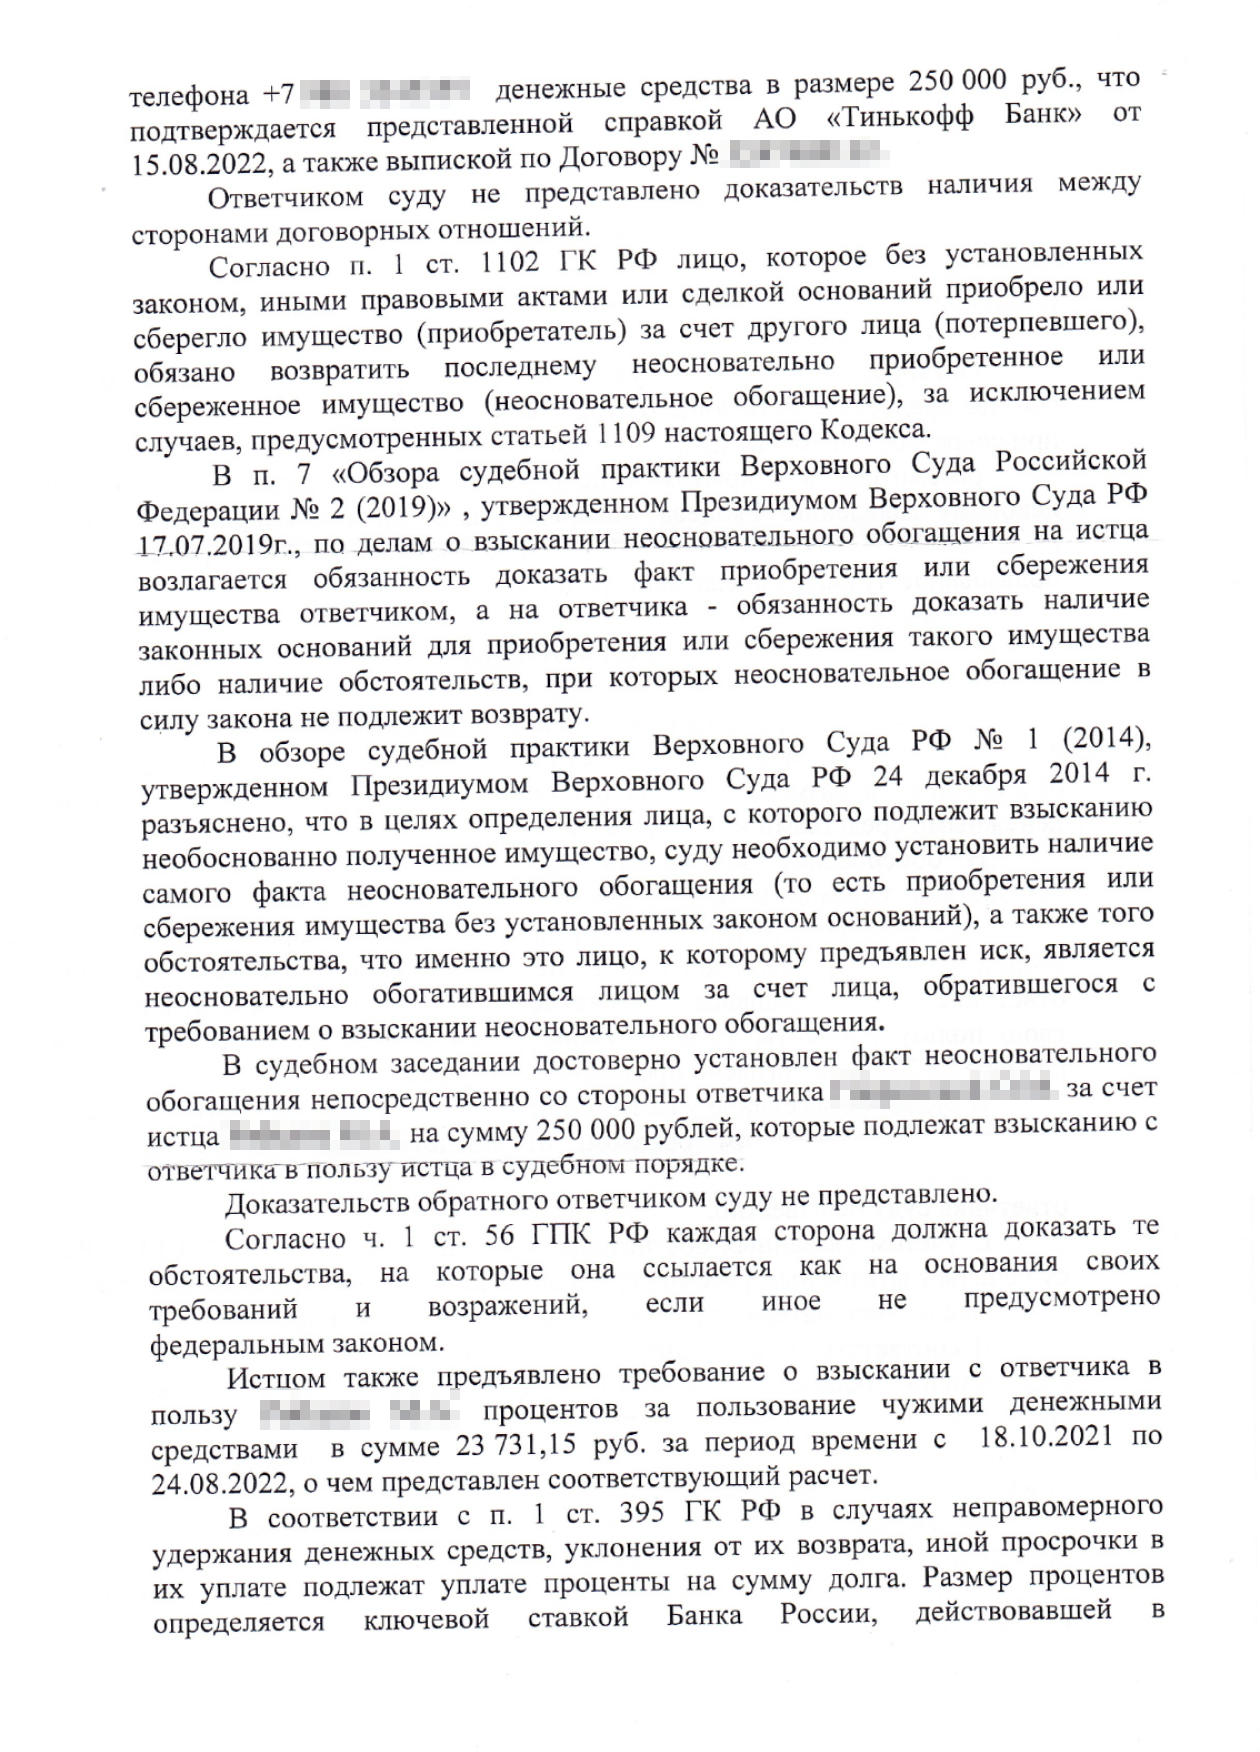 Заочное решение Октябрьского районного суда Новороссийска, которым в пользу Максима было присуждено 273 731 ₽